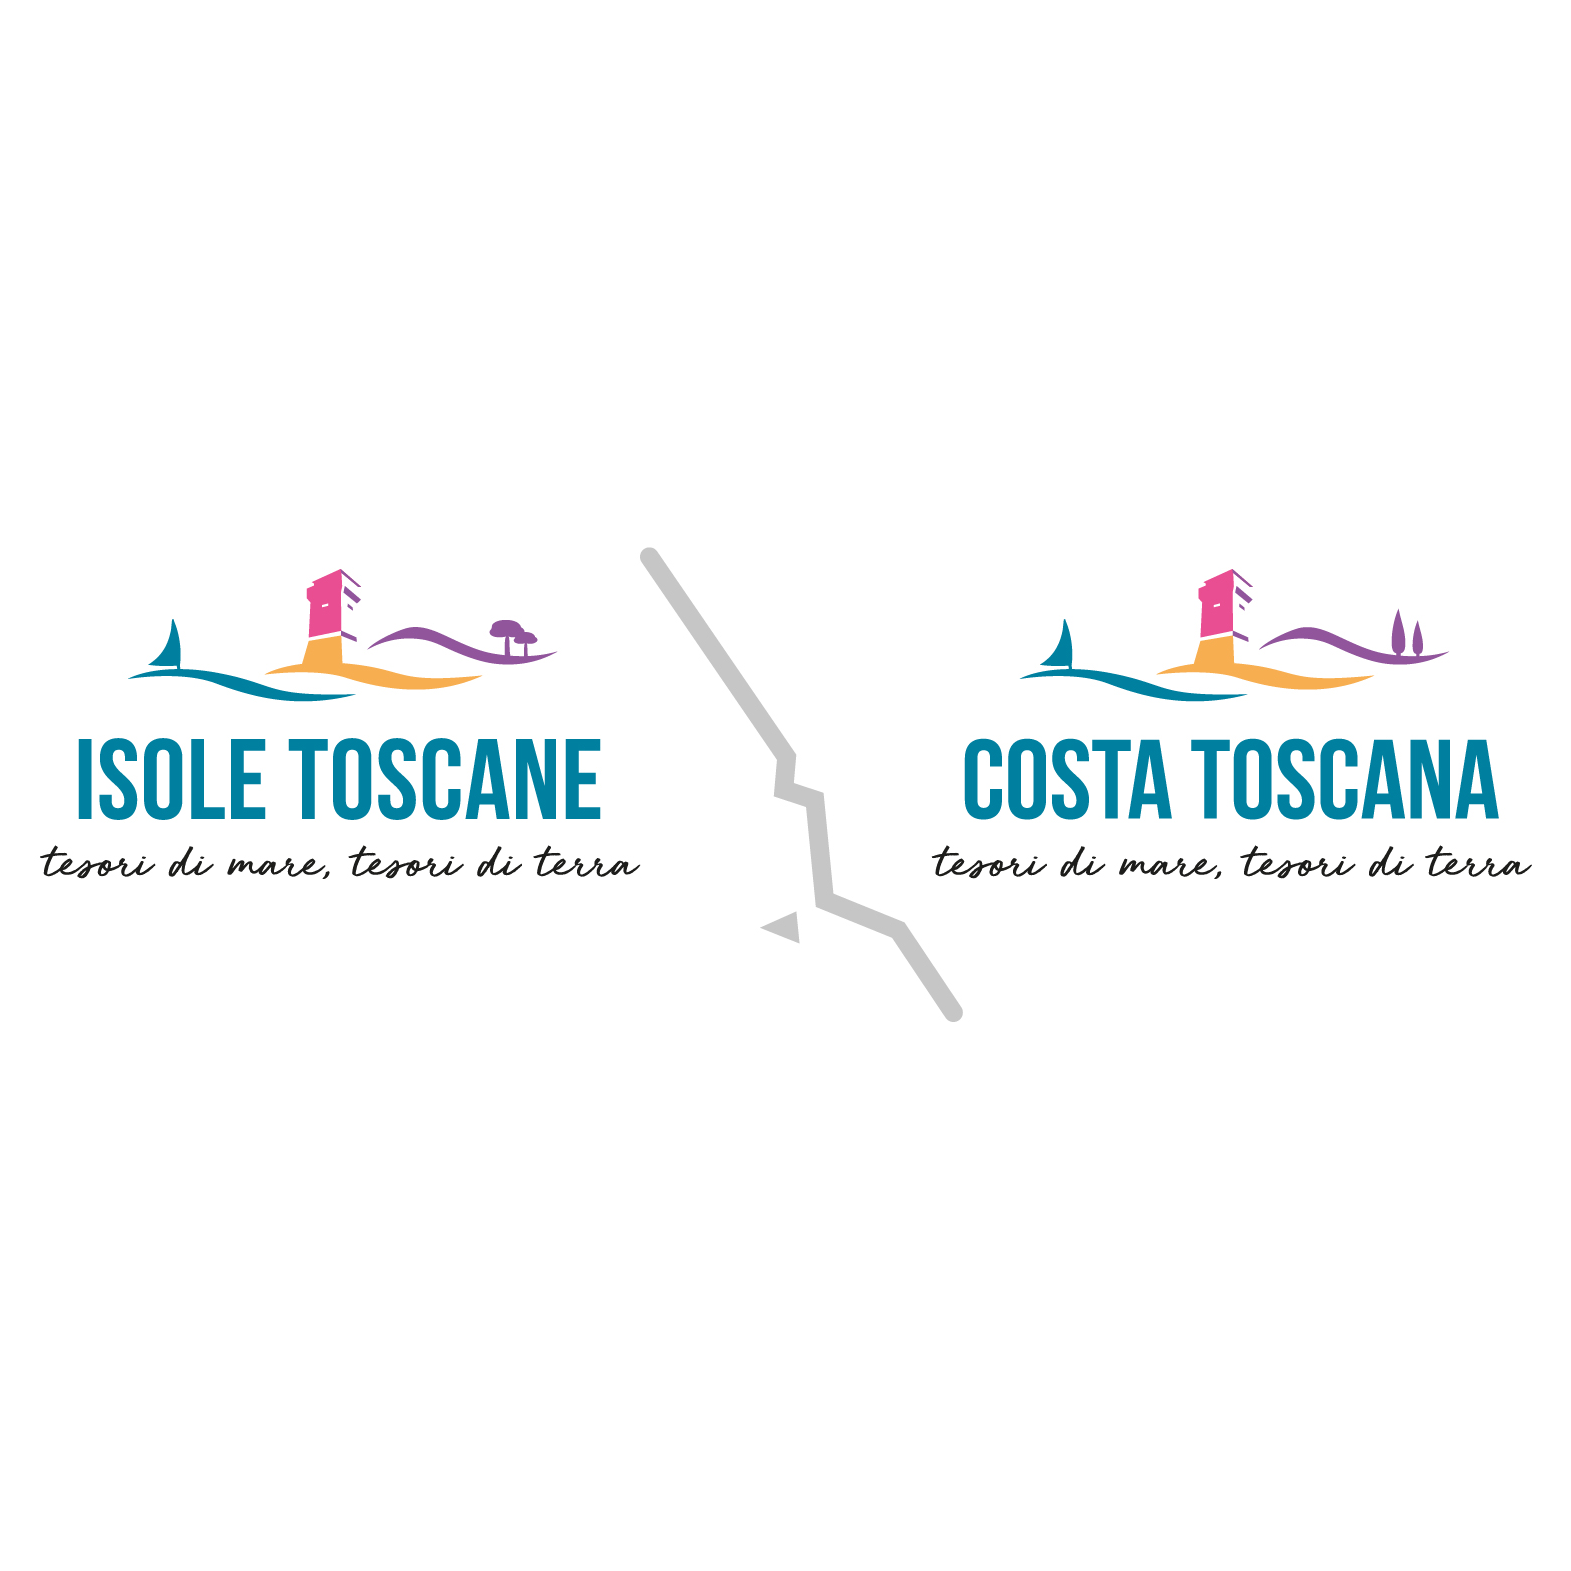 Costa e isole toscane, destinazione sostenibile  Il mare della toscana scommette sul turismo green – comunicato stampa